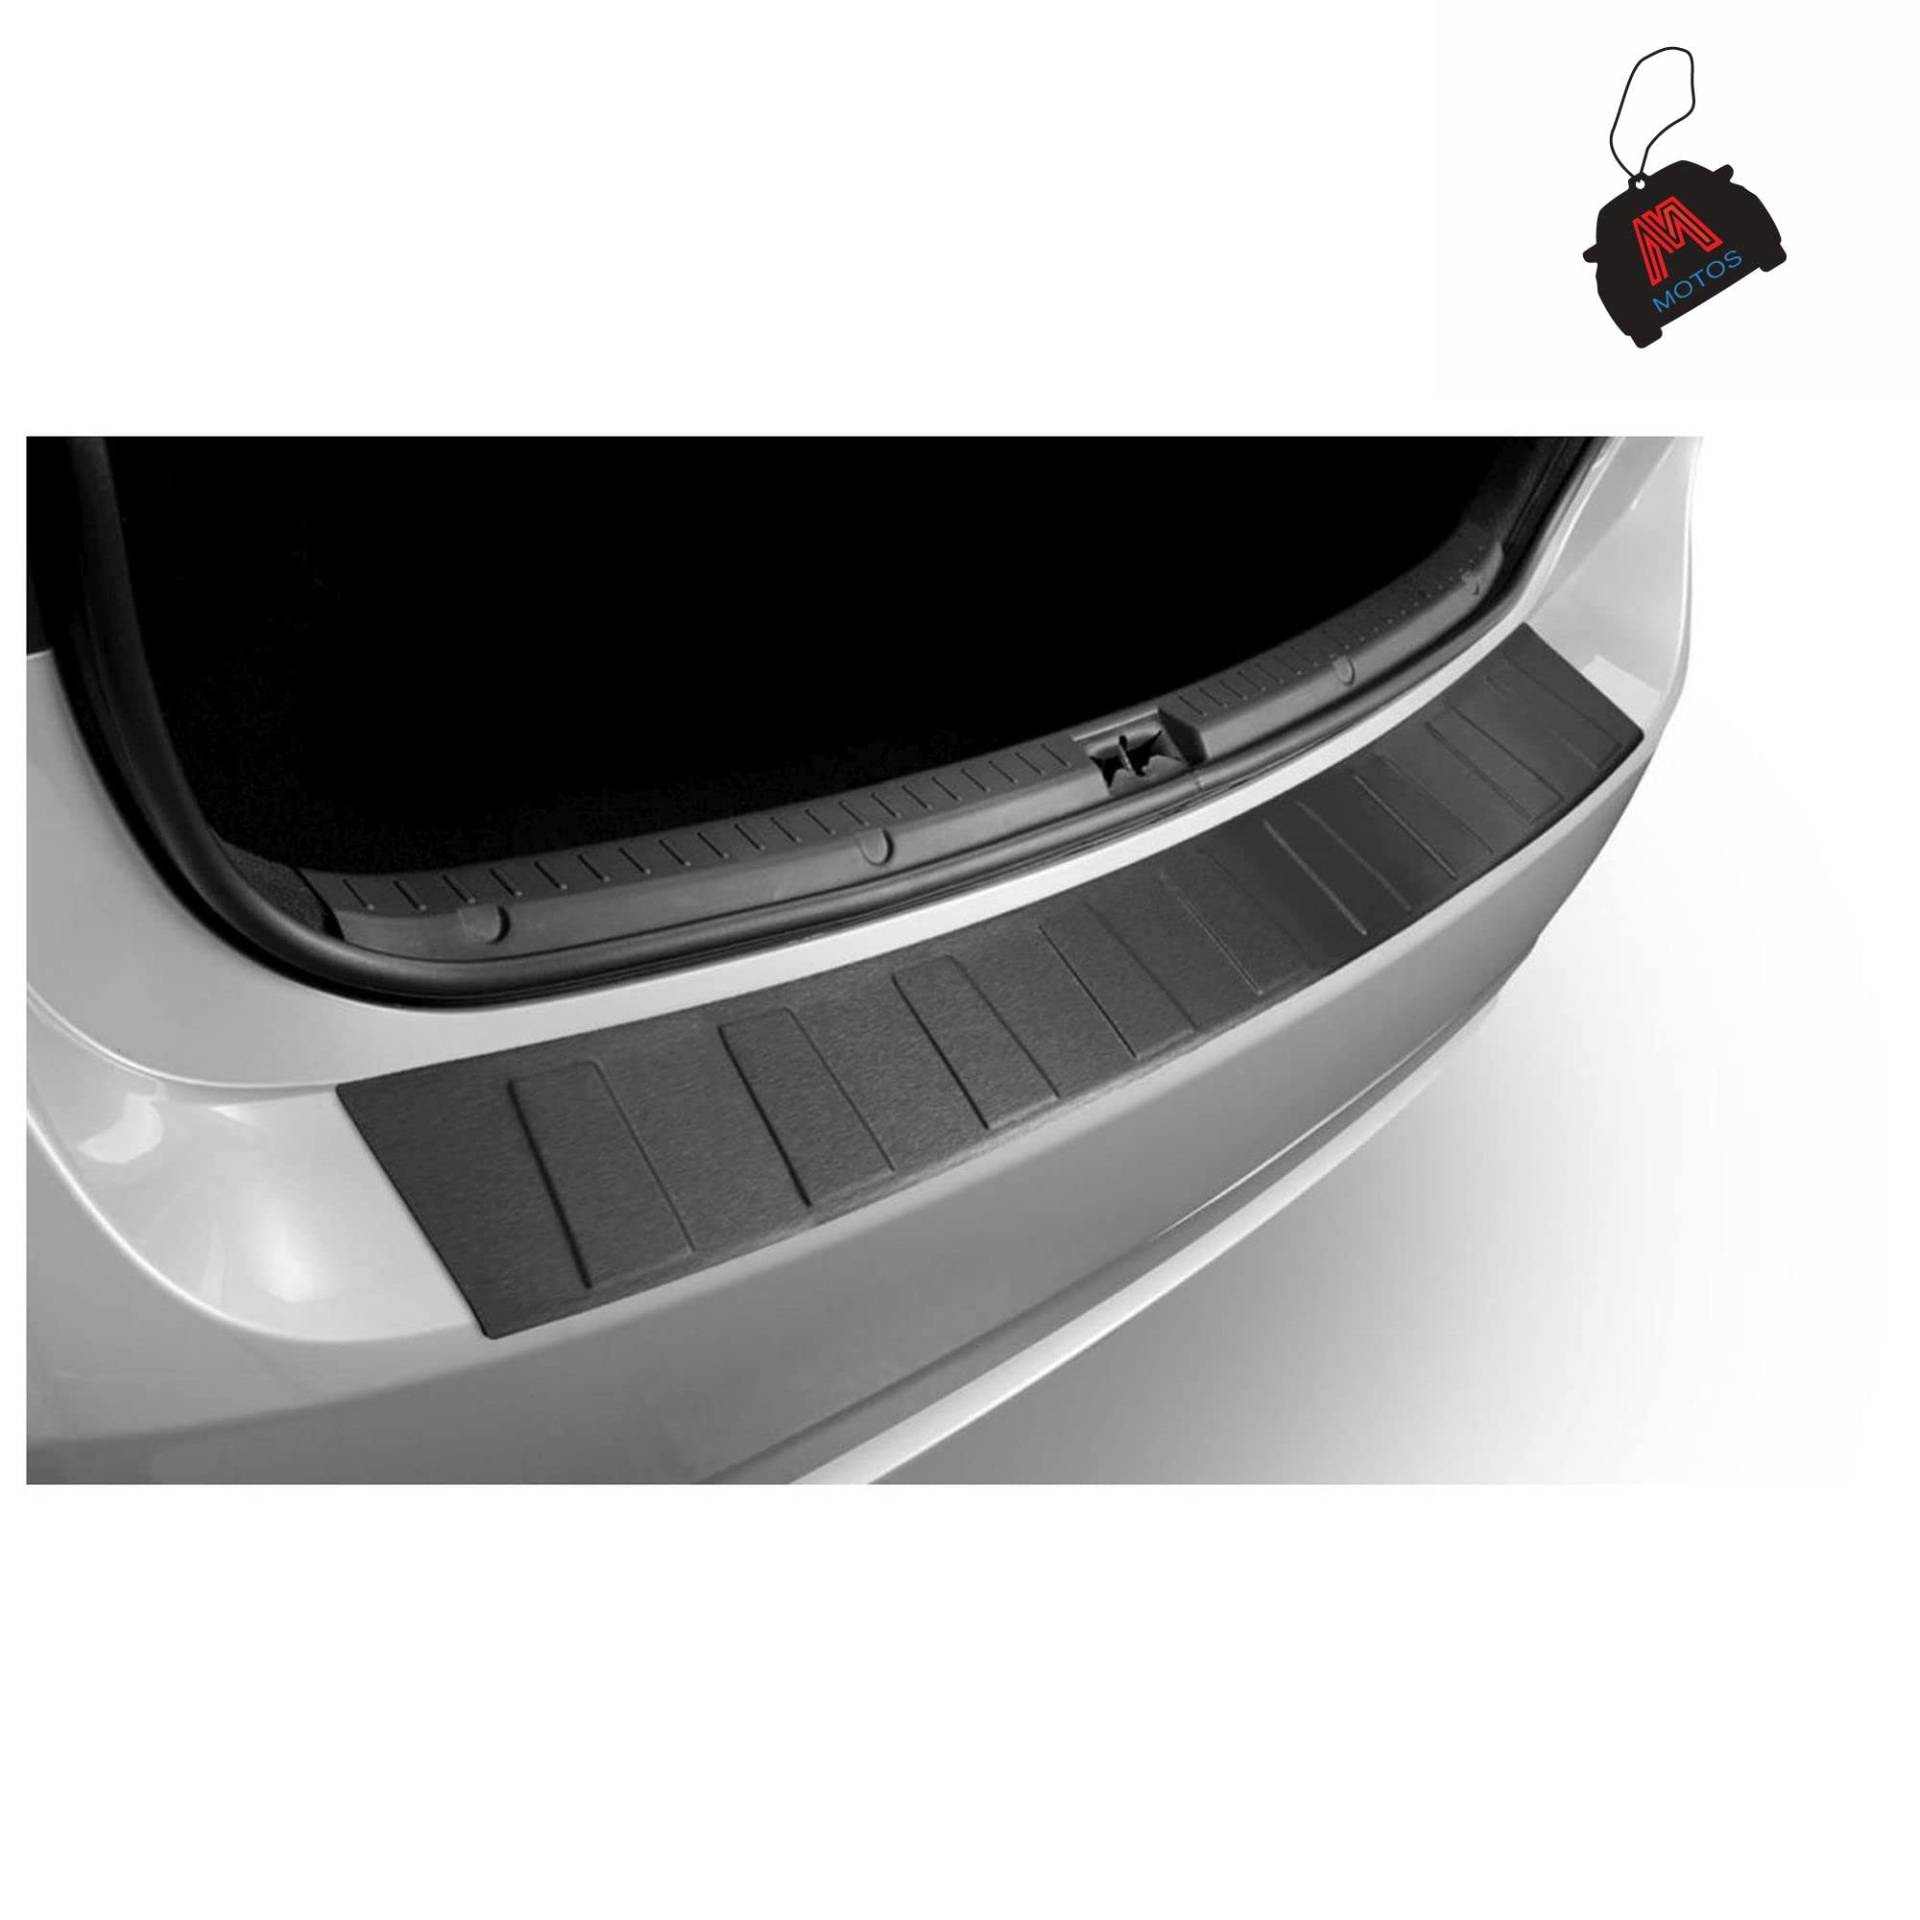 M MOTOS Satin Schwarz Edelstahl-Ladekantenschutz für Toyota Yaris III FL2 2017-2019 5 -türig. Erhöhter Fahrkomfort mit säurefesten Schwellerplatten - Kratzschutz von M MOTOS